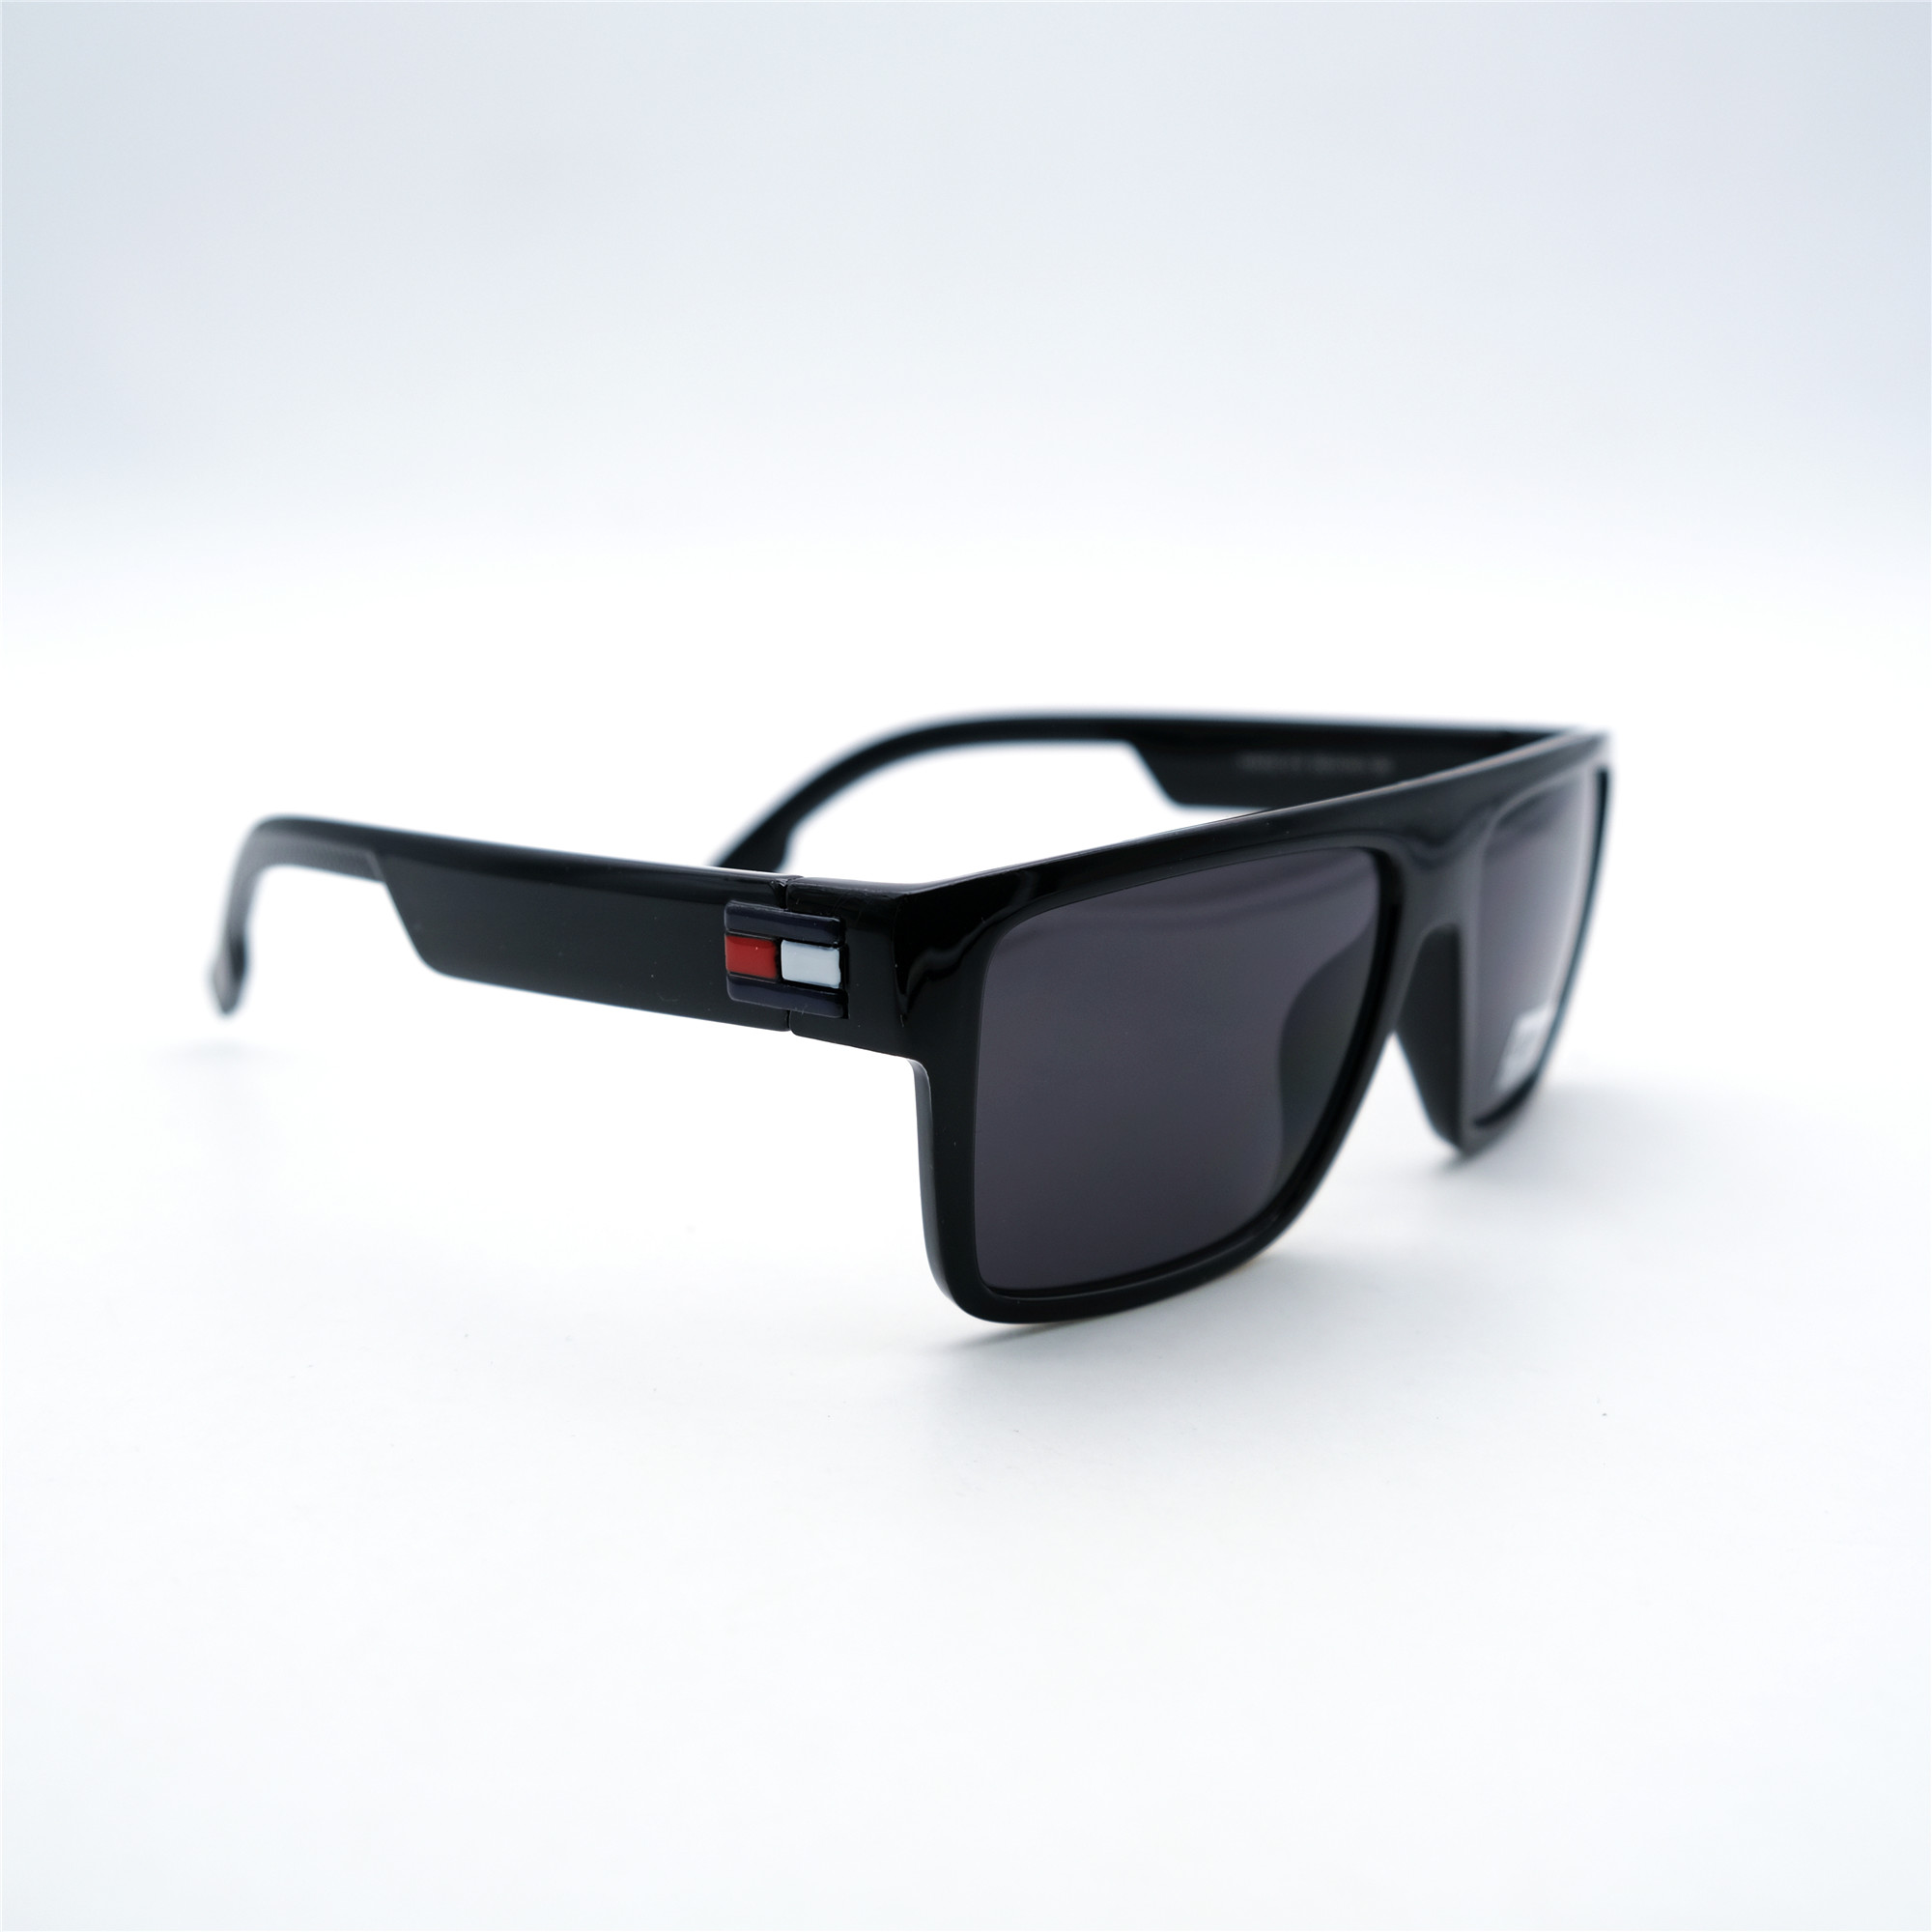  Солнцезащитные очки картинка Мужские Decorozza  Квадратные D1012-1 